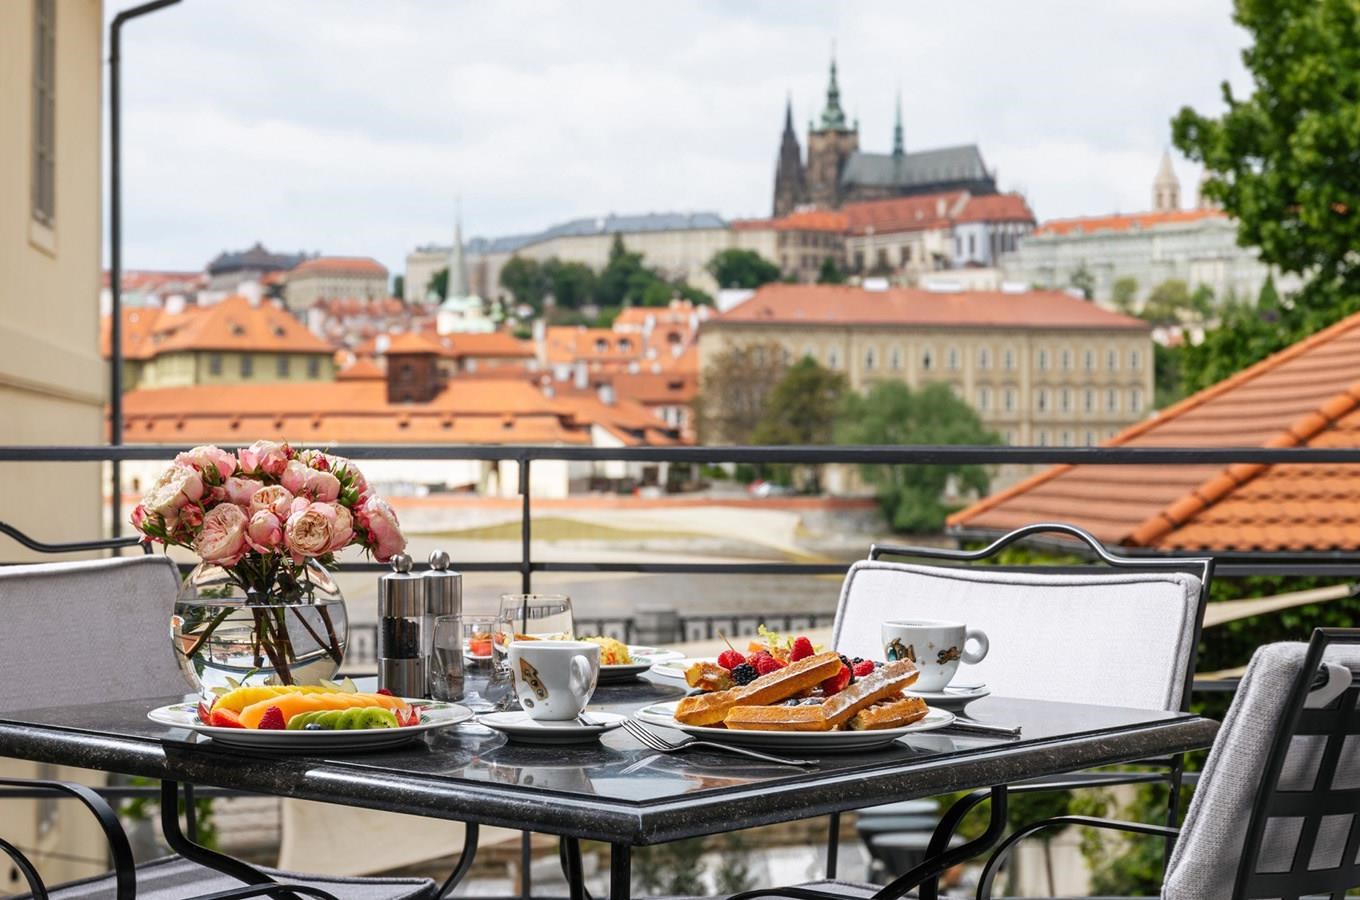 Hotel Four Seasons Prague obhájil 5 hvězd v mezinárodním hodnocení Forbes Travel Guide